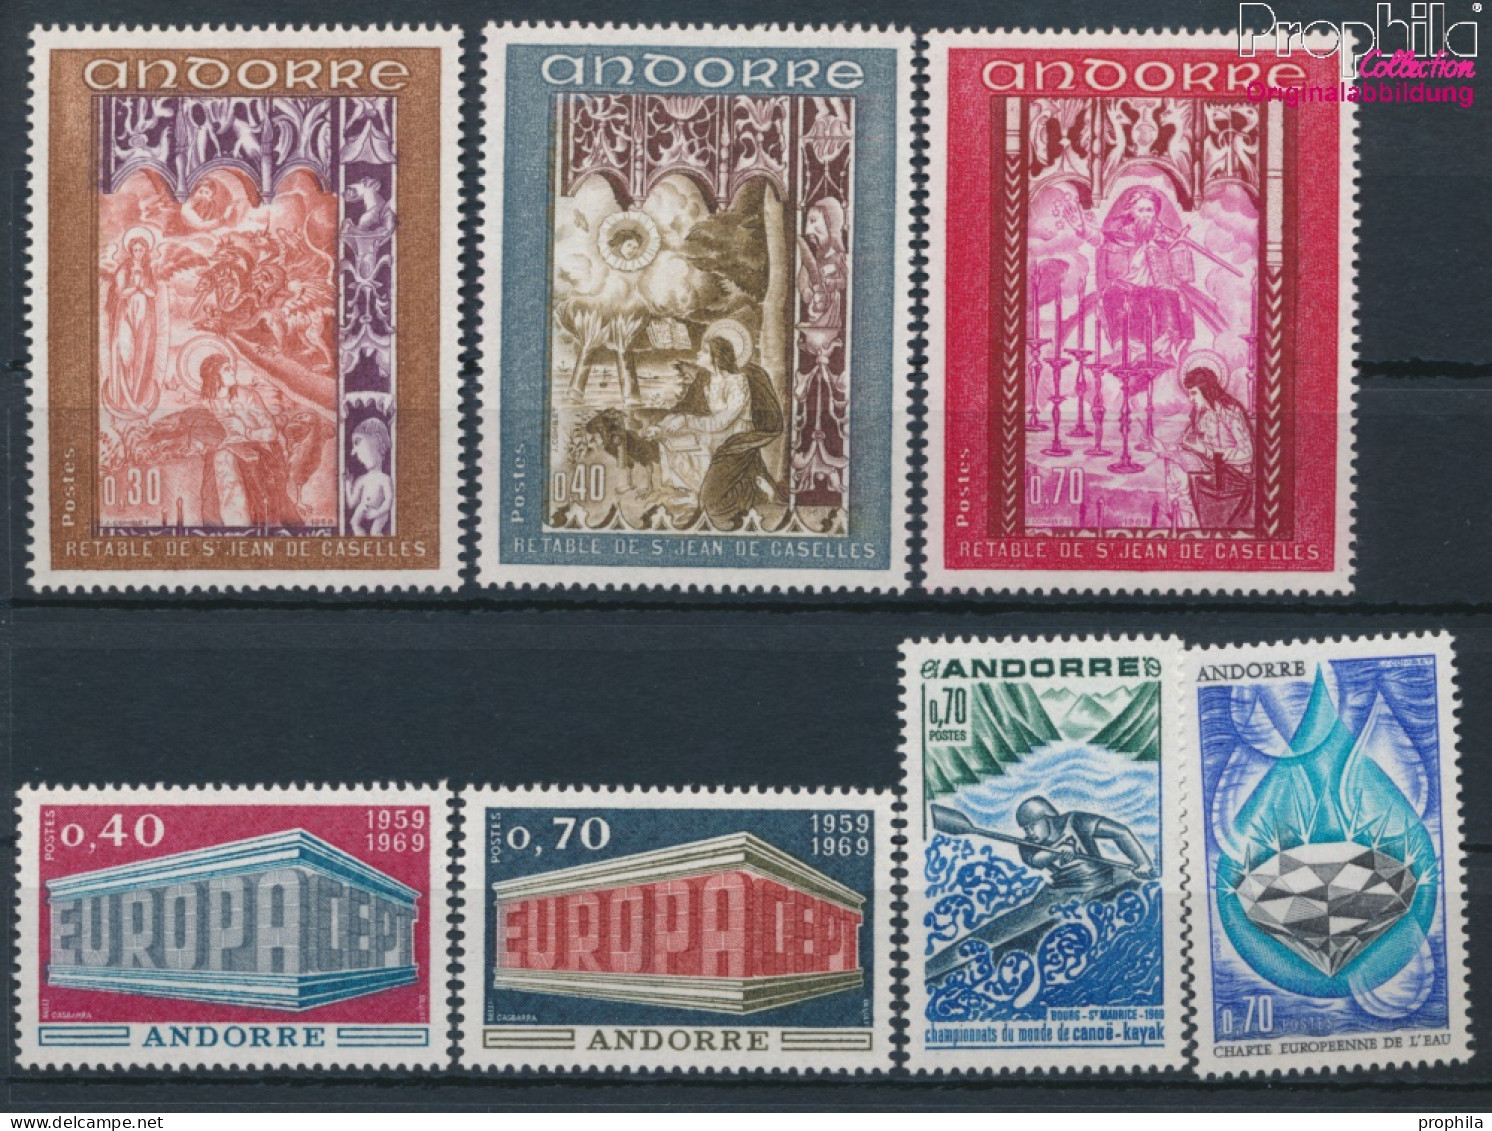 Andorra - Französische Post Postfrisch Europa 1969 Europa, Kanu, Wasserschutz, Fresken  (10368753 - Neufs